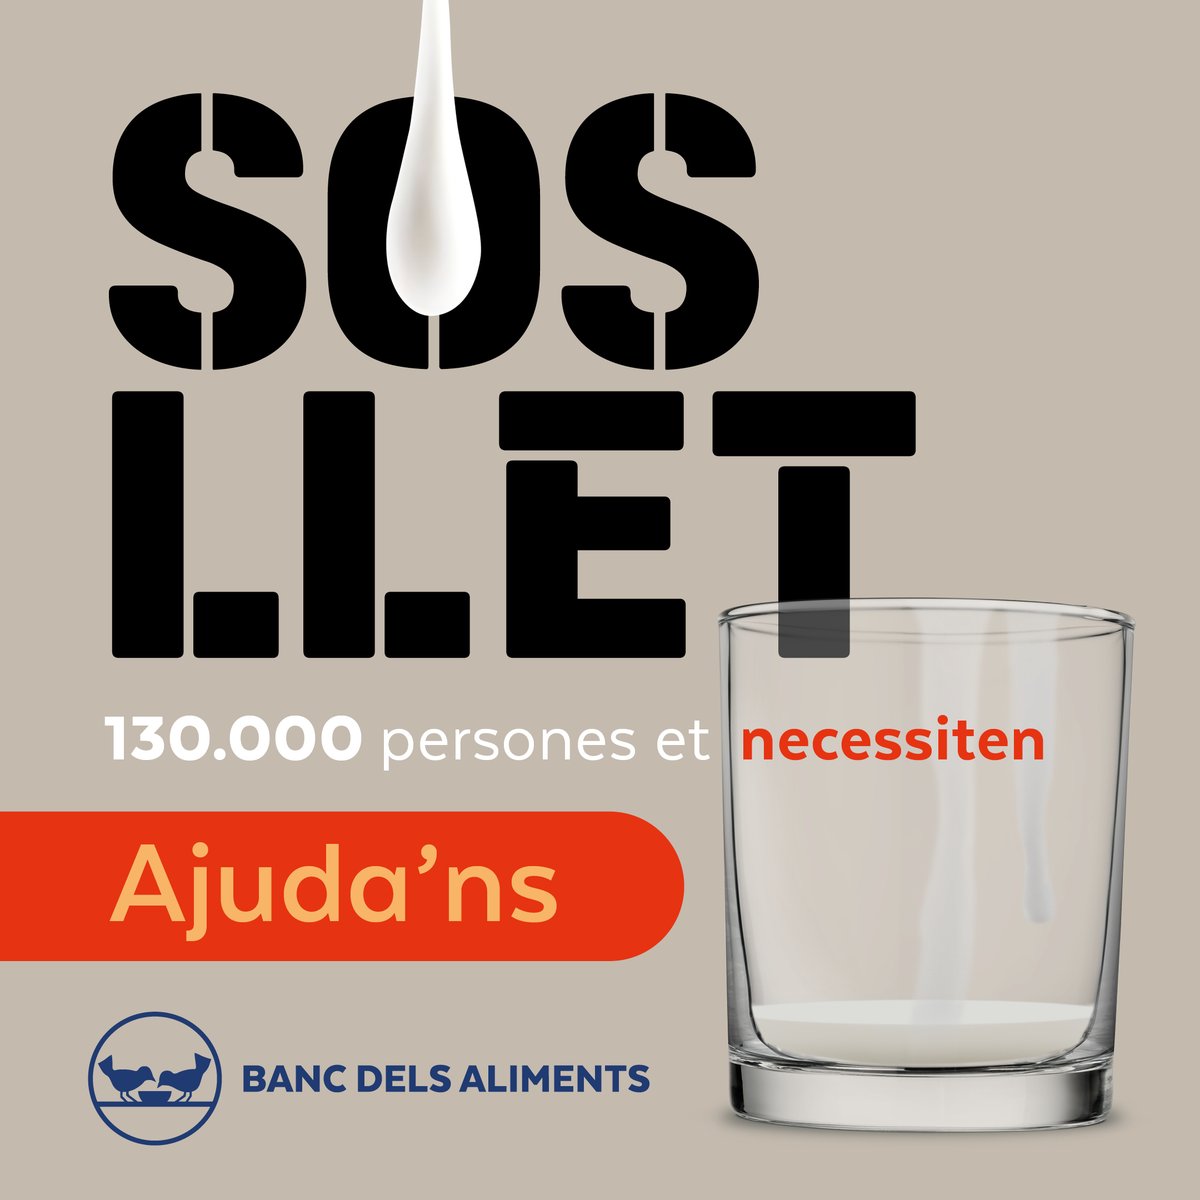 Gràcies a la vostra generositat, hem superat les 500 donacions a la nostra campanya #SOSLLET! Continuem per garantir les entregues setmanals de llet a més de 130.000 persones. Cada donació compta! dona.bancdelsaliments.org/ca/sos_llet #sosllet #bancdelsaliments #barcelona #llet…